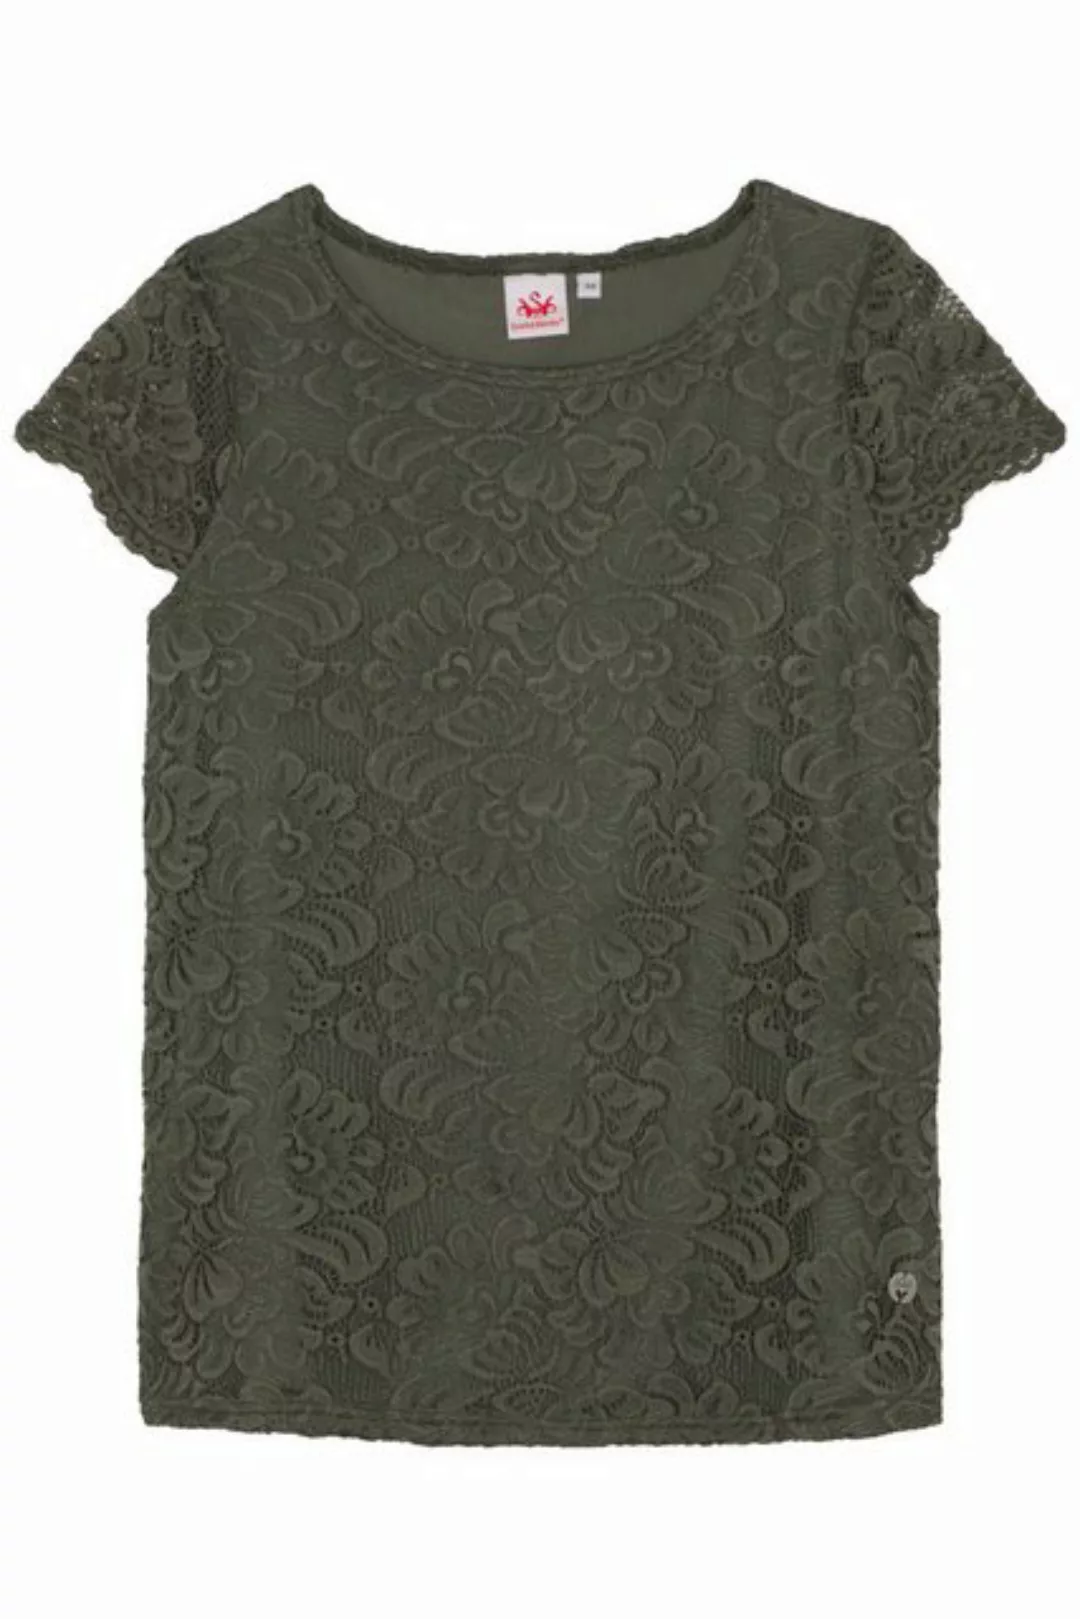 Spieth & Wensky Trachtenbluse Blusenshirt - DIVERIA - lilarosa, olivgrün günstig online kaufen